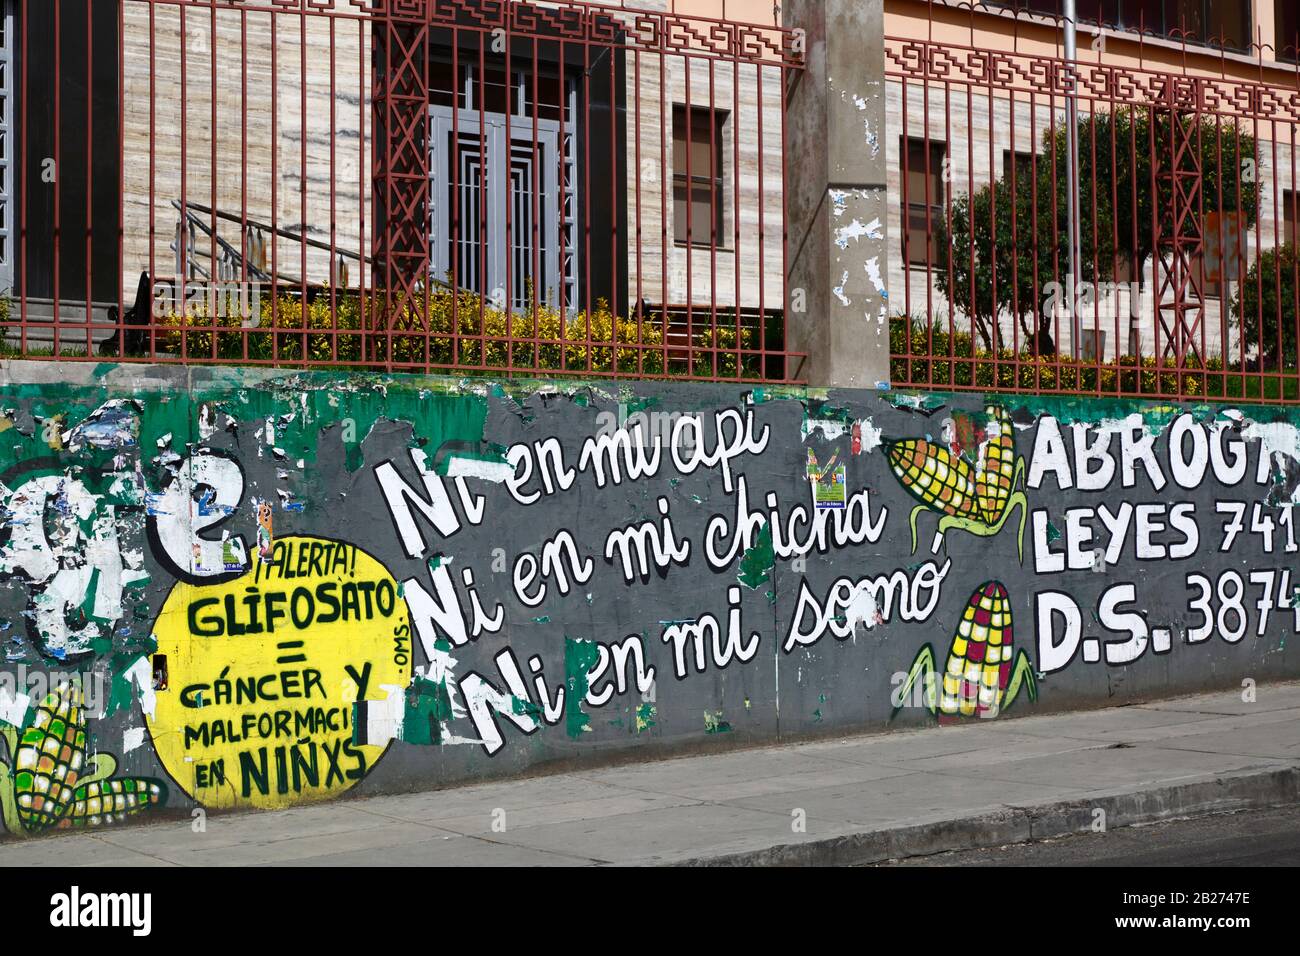 La Paz, Bolivien, 29. Februar 2020: Wandbild, das gegen Gesetze protestiert, um transgene Kulturen neben der Haupt-UMSA-Universität in La Paz zuzulassen. Auf dem gelben Hintergrund auf der linken Seite befinden sich Warnungen vor Glyphosat, das Krebs und Deformierungen bei Kindern verursacht. Die Sätze "Ni en mi / Nicht in meiner api" usw. beziehen sich auf api, Chicha und somo, beliebte traditionelle bolivianische Getränke, die mit Mais/Mais hergestellt werden. Stockfoto